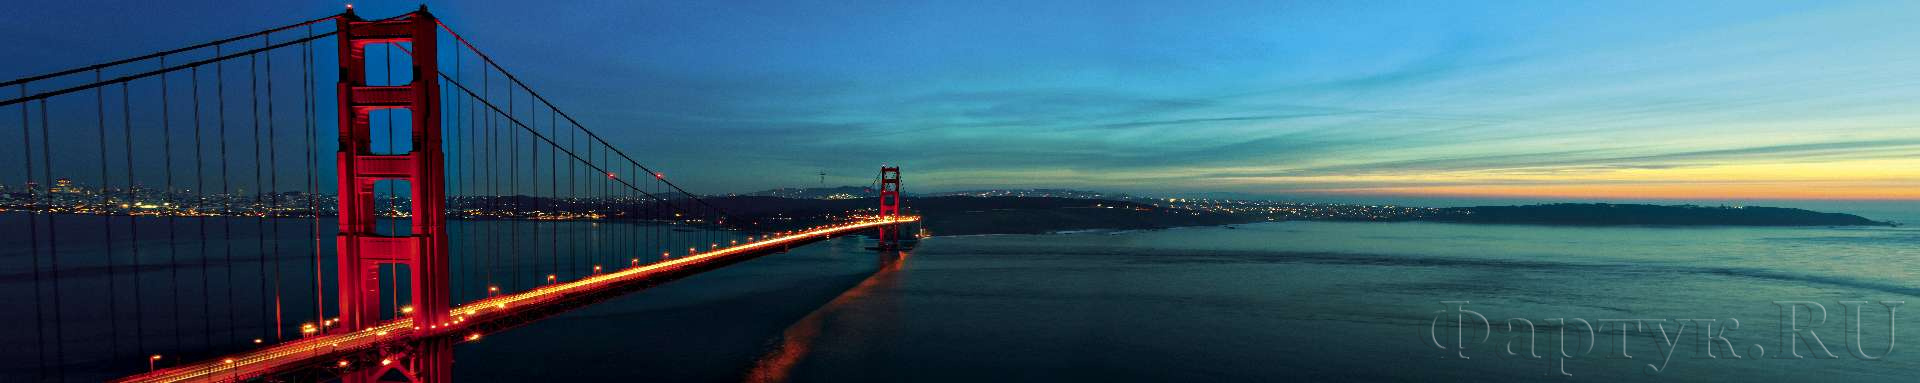 Вечерняя панорама, мост